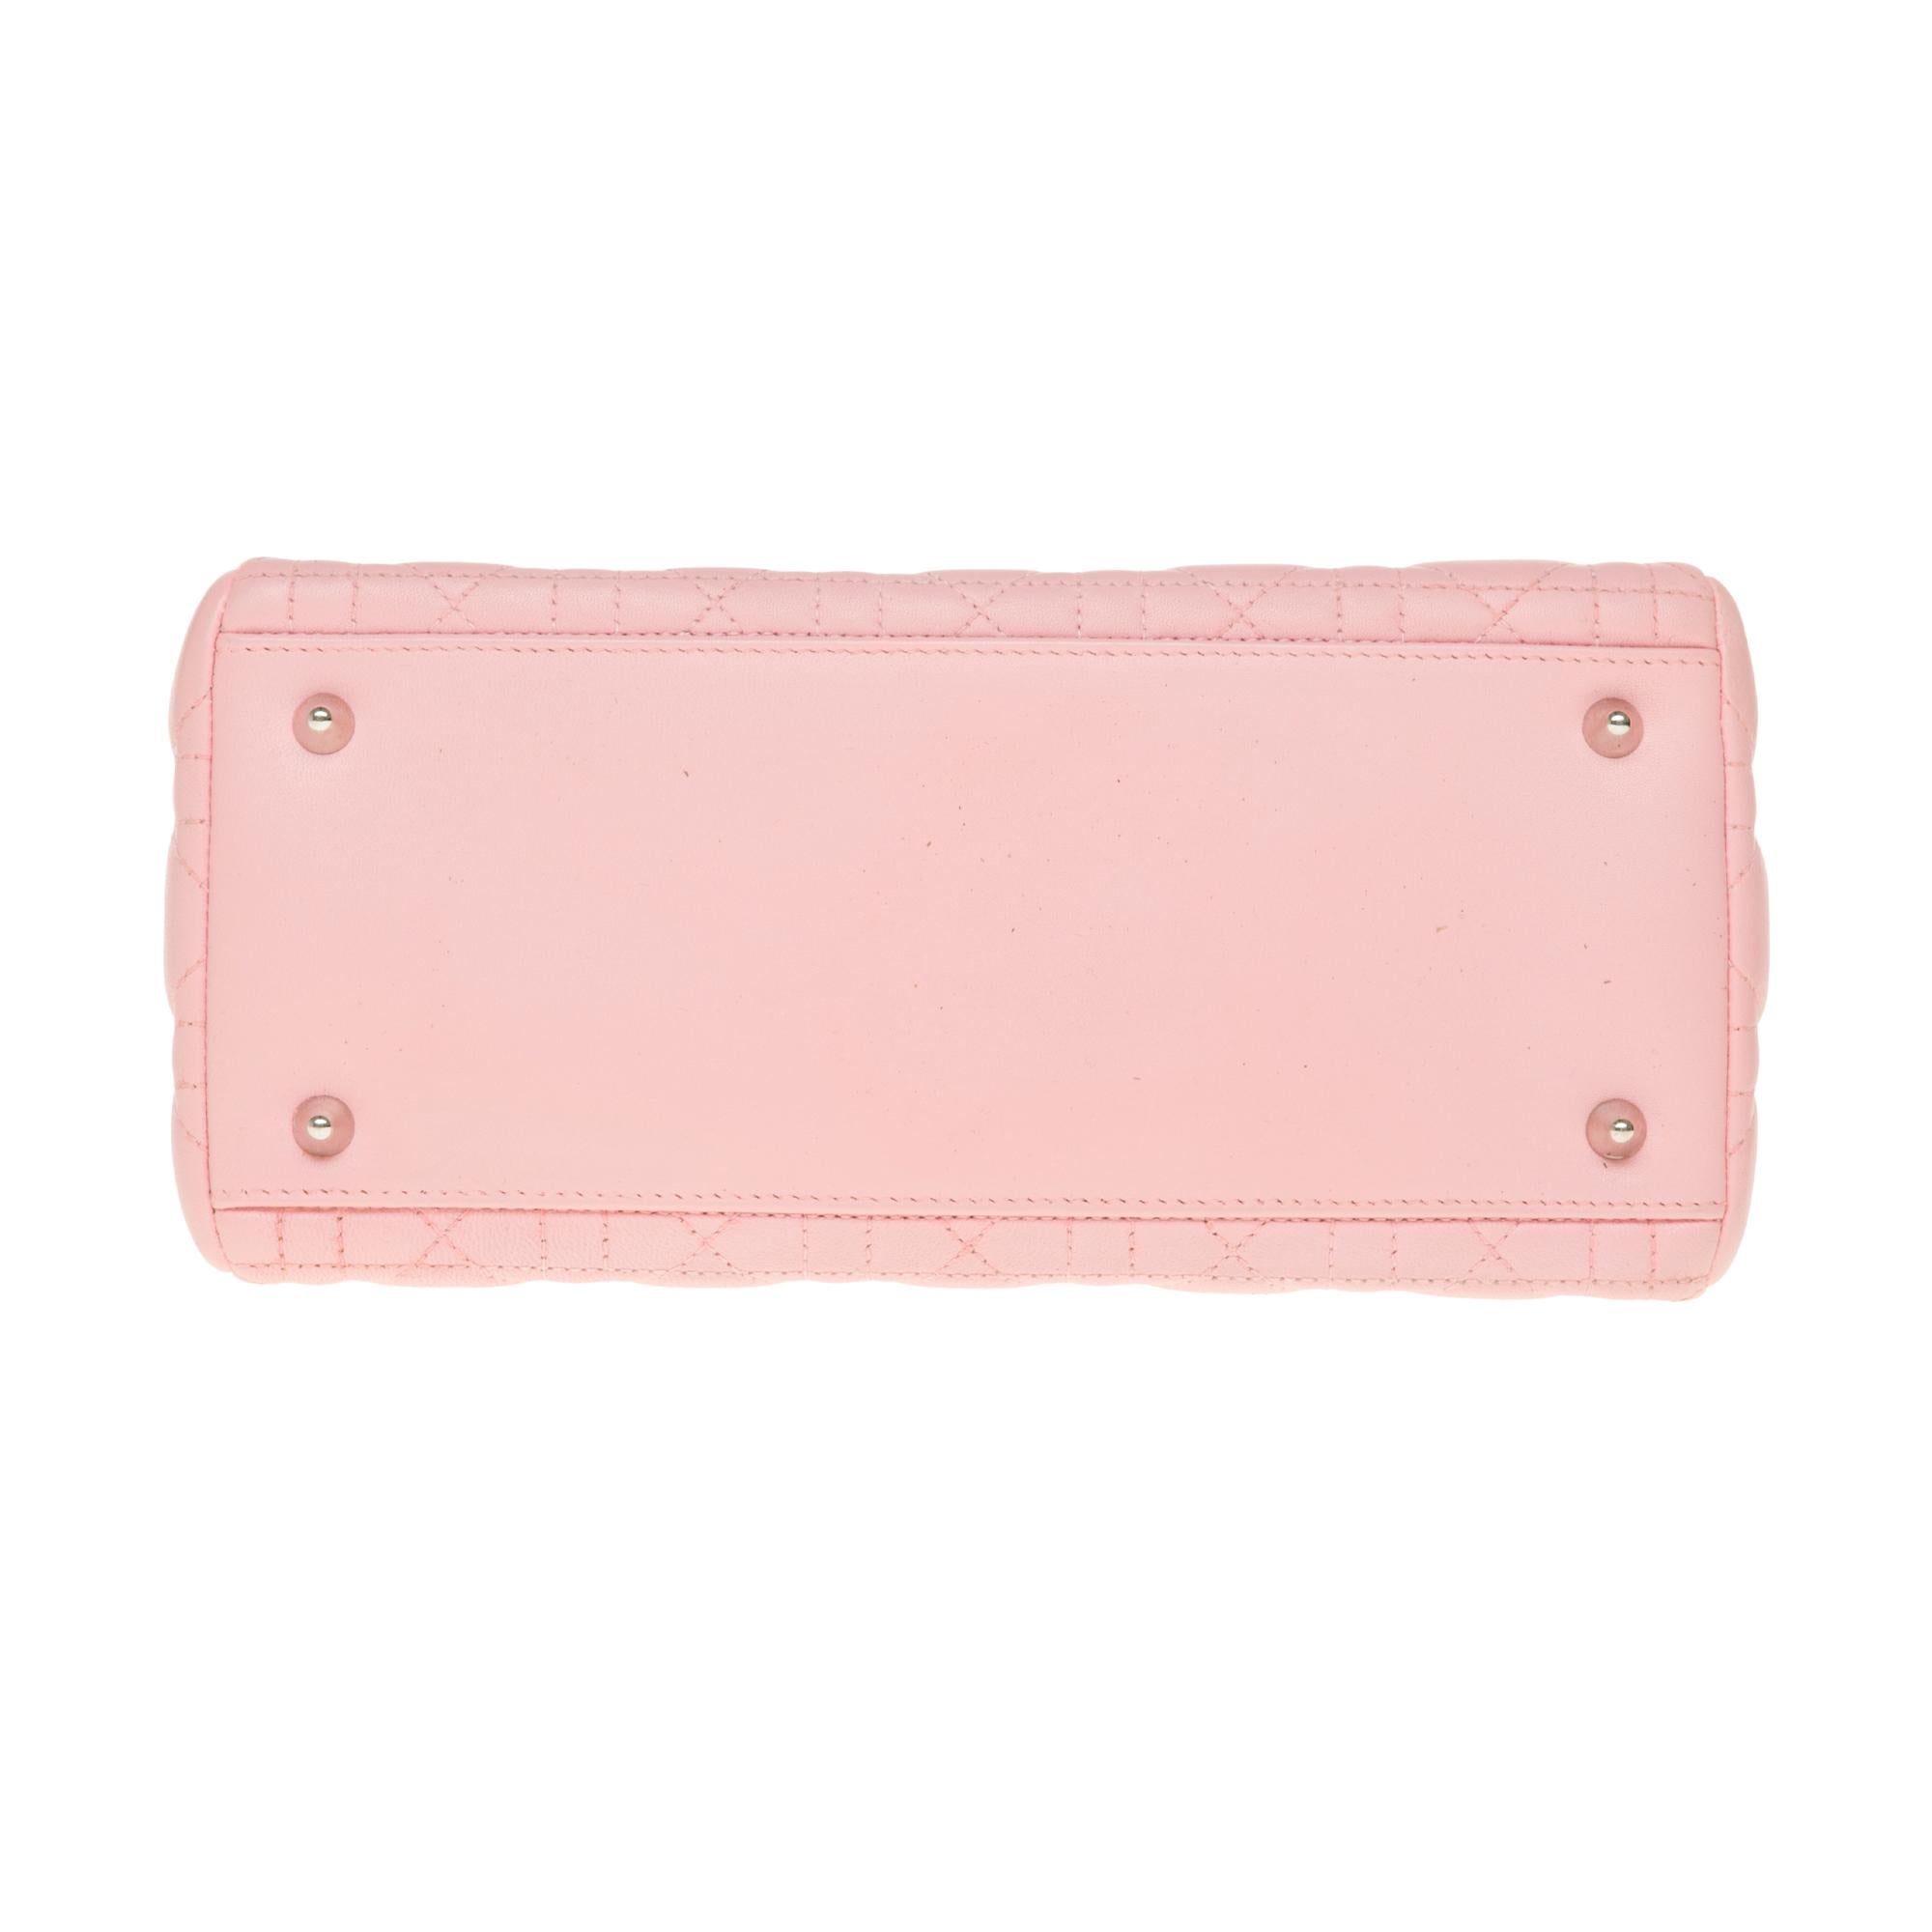  Christian Dior Lady Dior Medium size handbag in Pink cannage leather, SHW 3